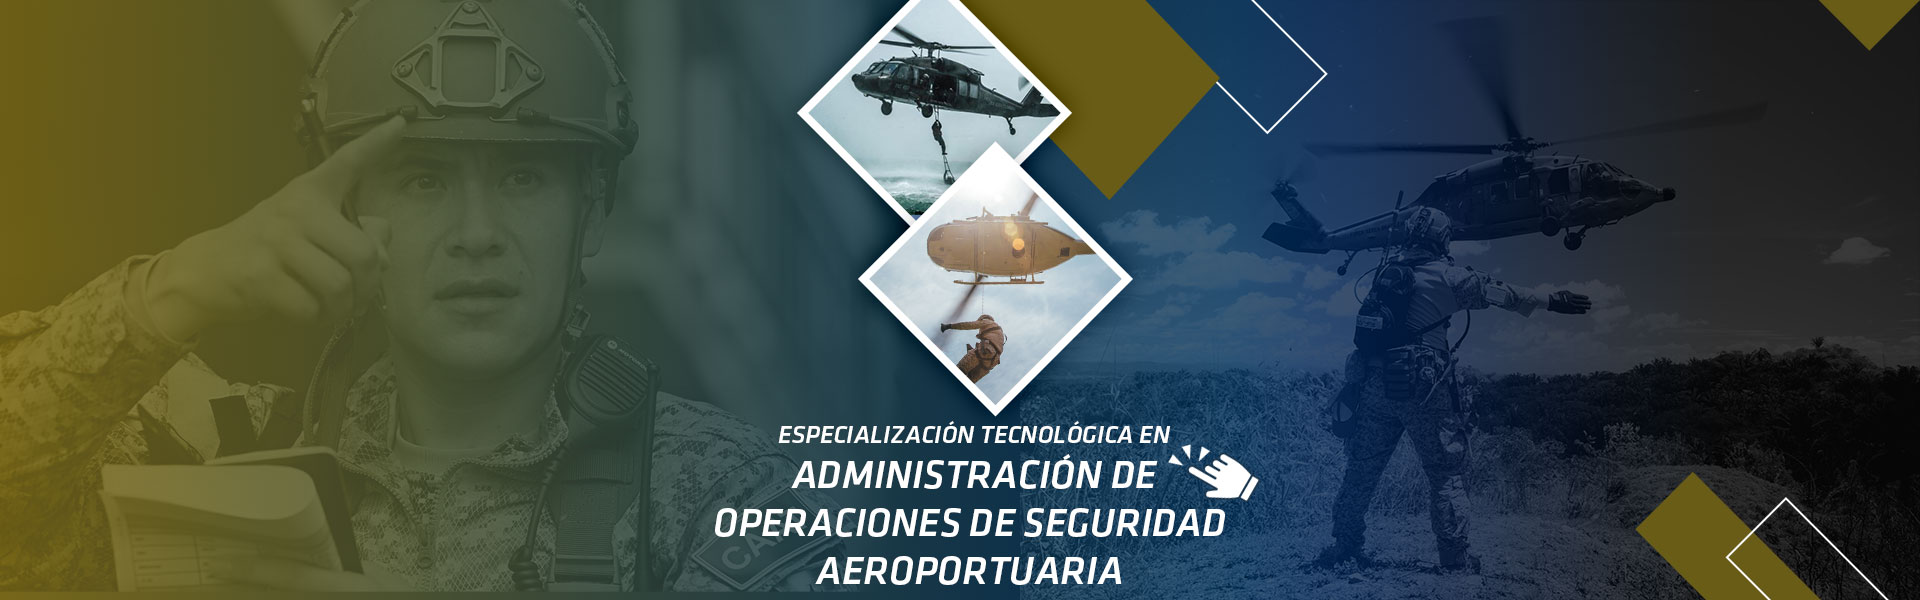 Administración de Operaciones de Seguridad Aeroportuaria